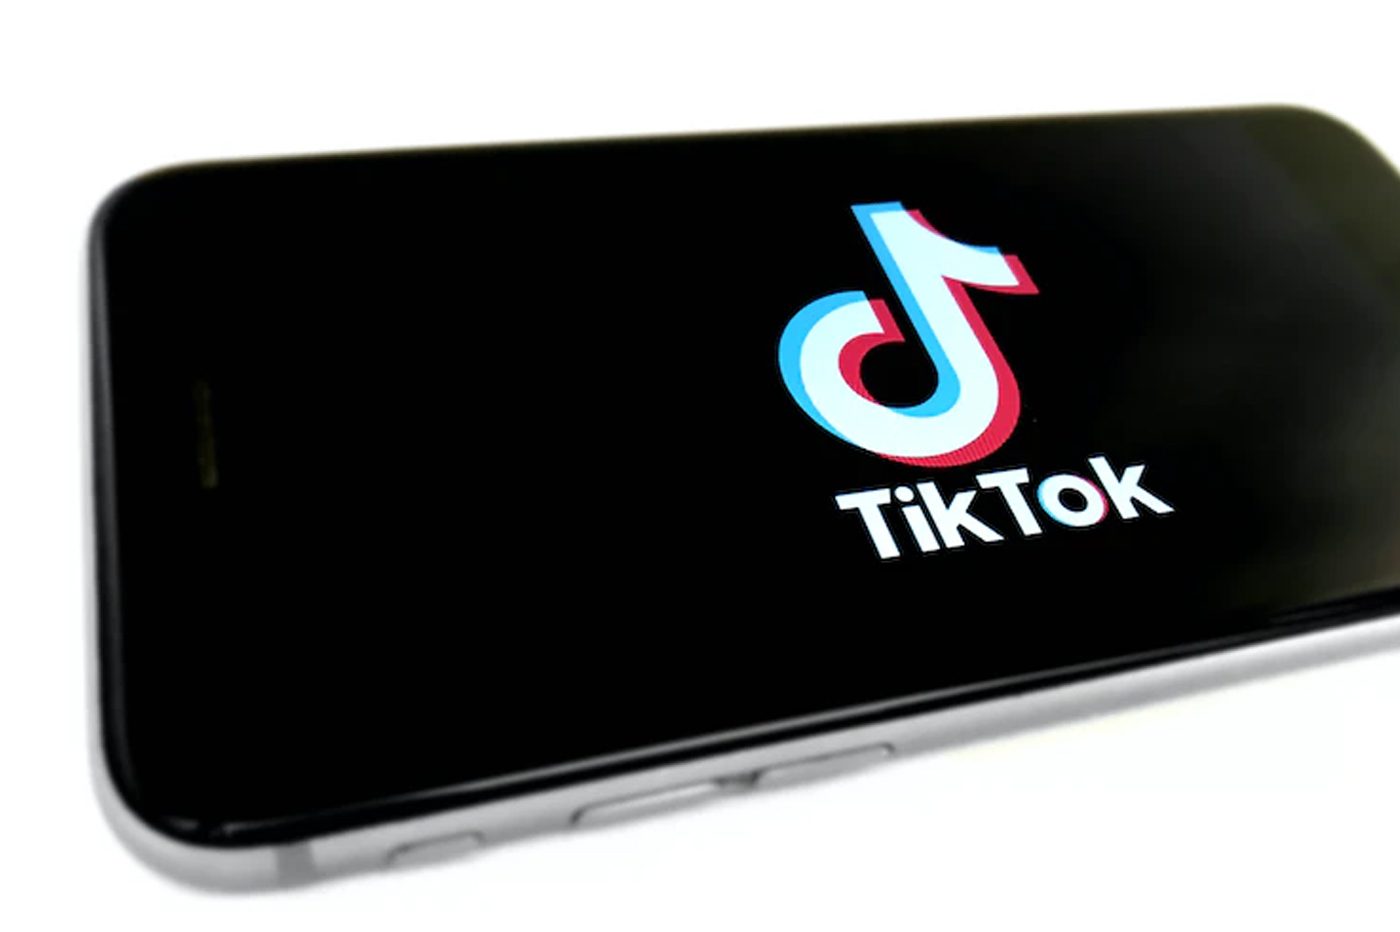 Interdiction de TikTok aux Etats-Unis : La Maison Blanche veut accélérer